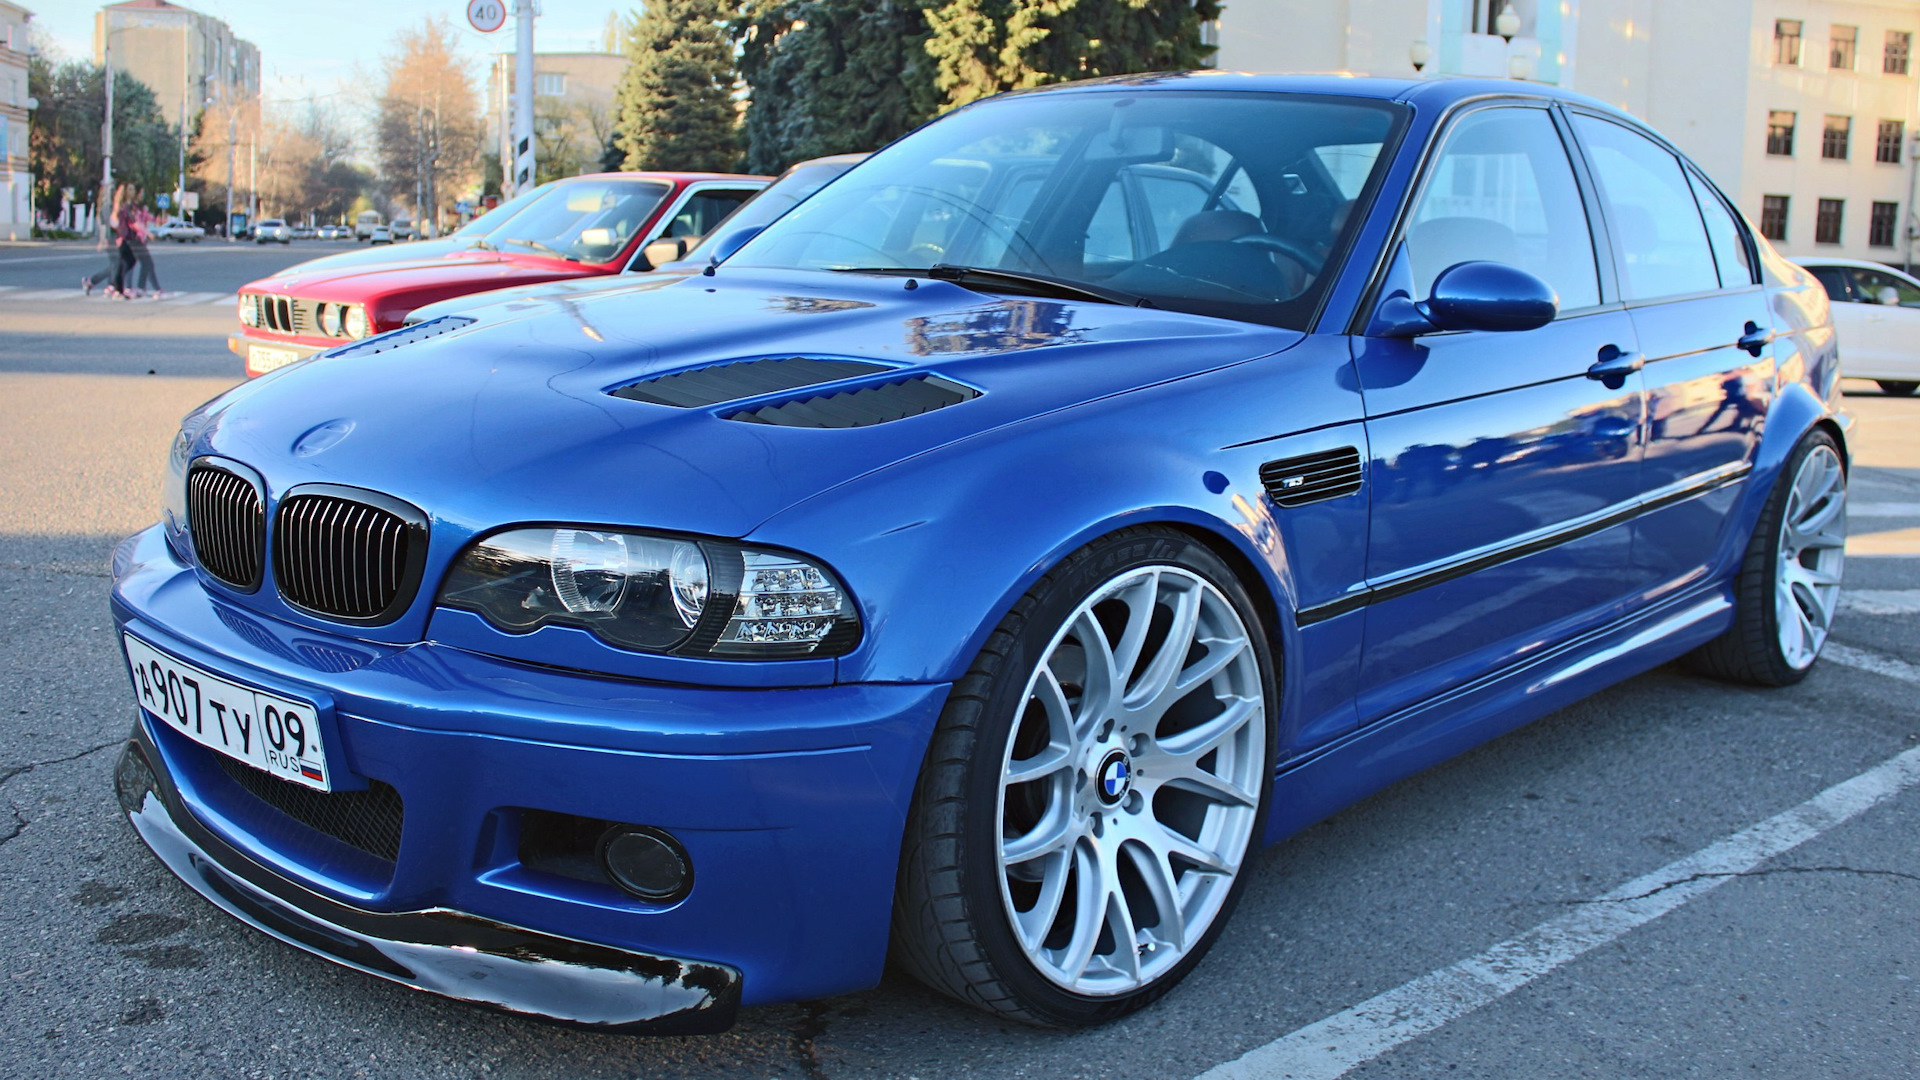 М3 е46 купить. БМВ м3 е46 седан. BMW e46 Coupe. БМВ е46 седан синяя. BMW m3 e46 sedan.